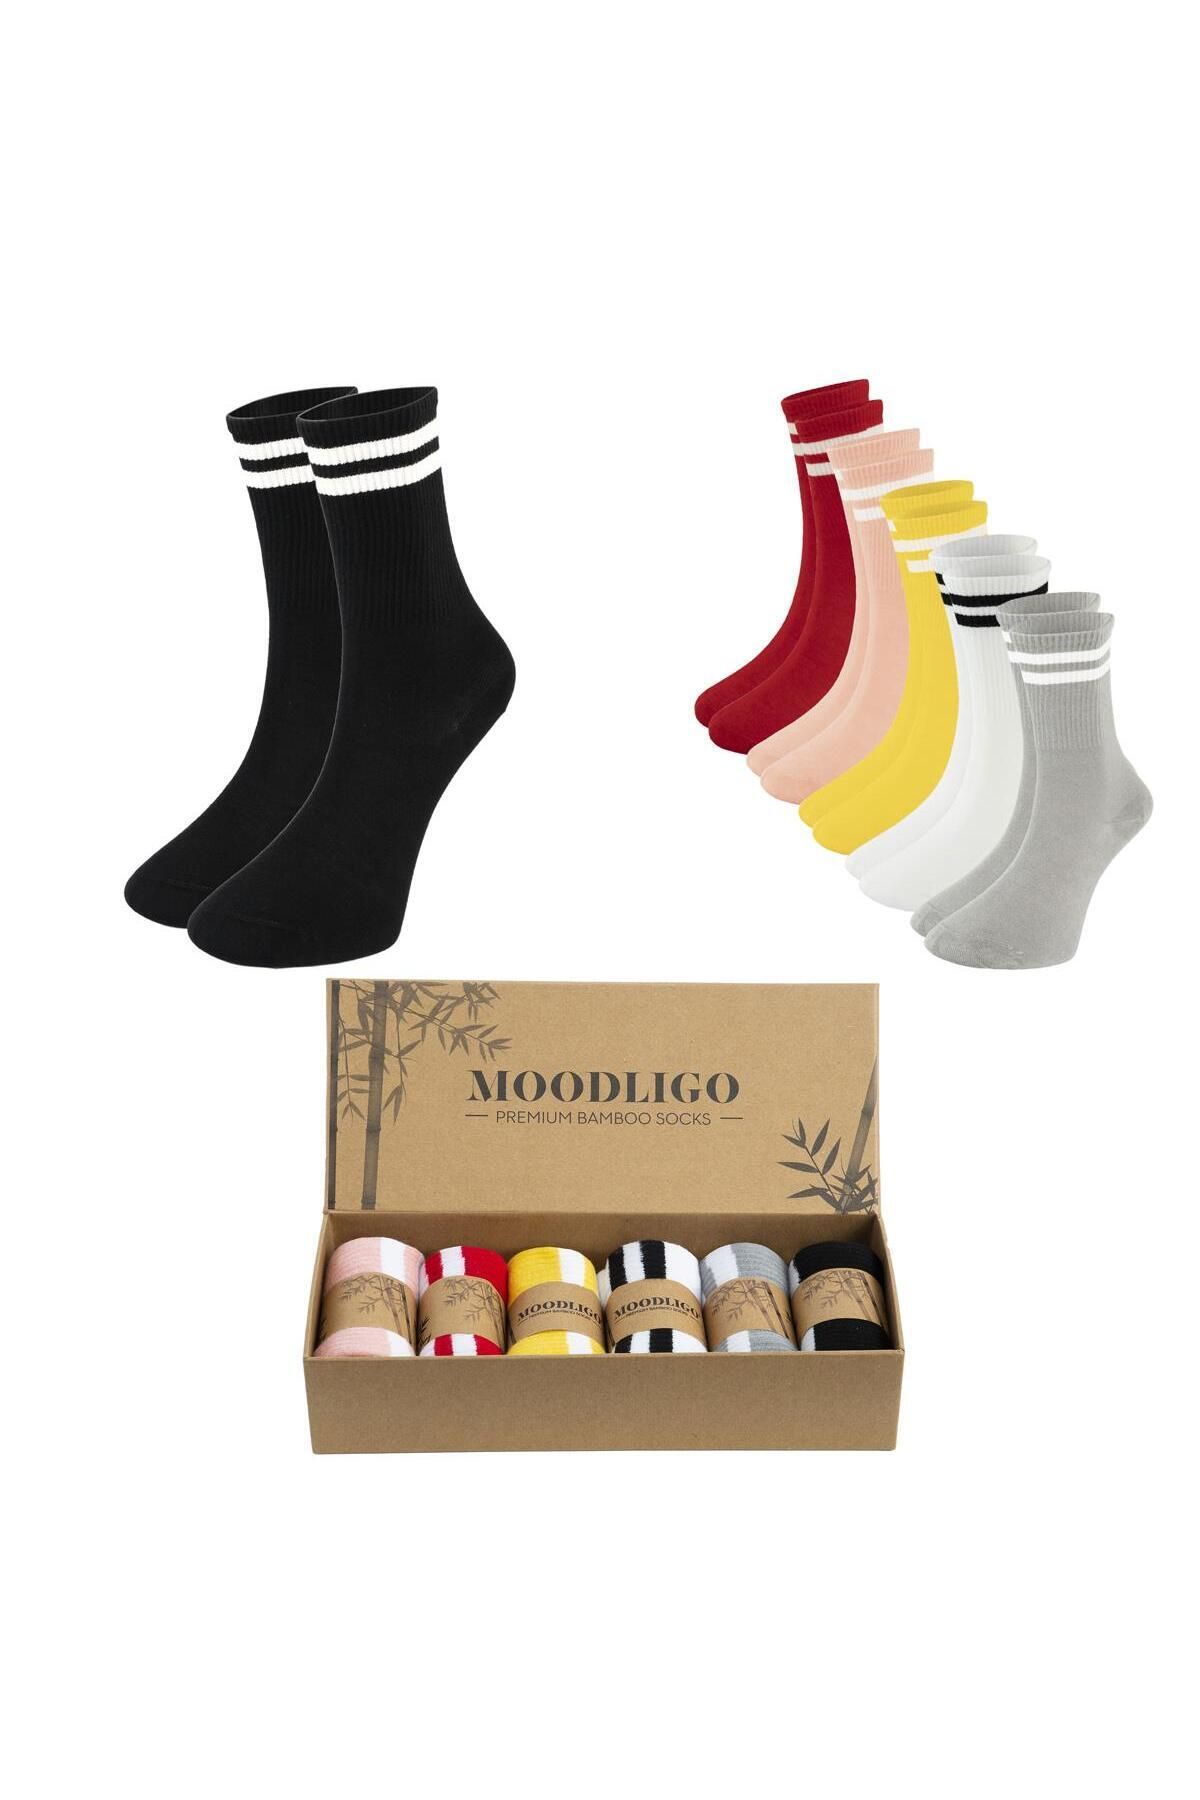 Moodligo Kadın 6'lı Premium Bambu Çizgili Kolej Tenis Çorabı - Siyah / Gri / Beyaz / Sarı / Pembe / Kırmızı -